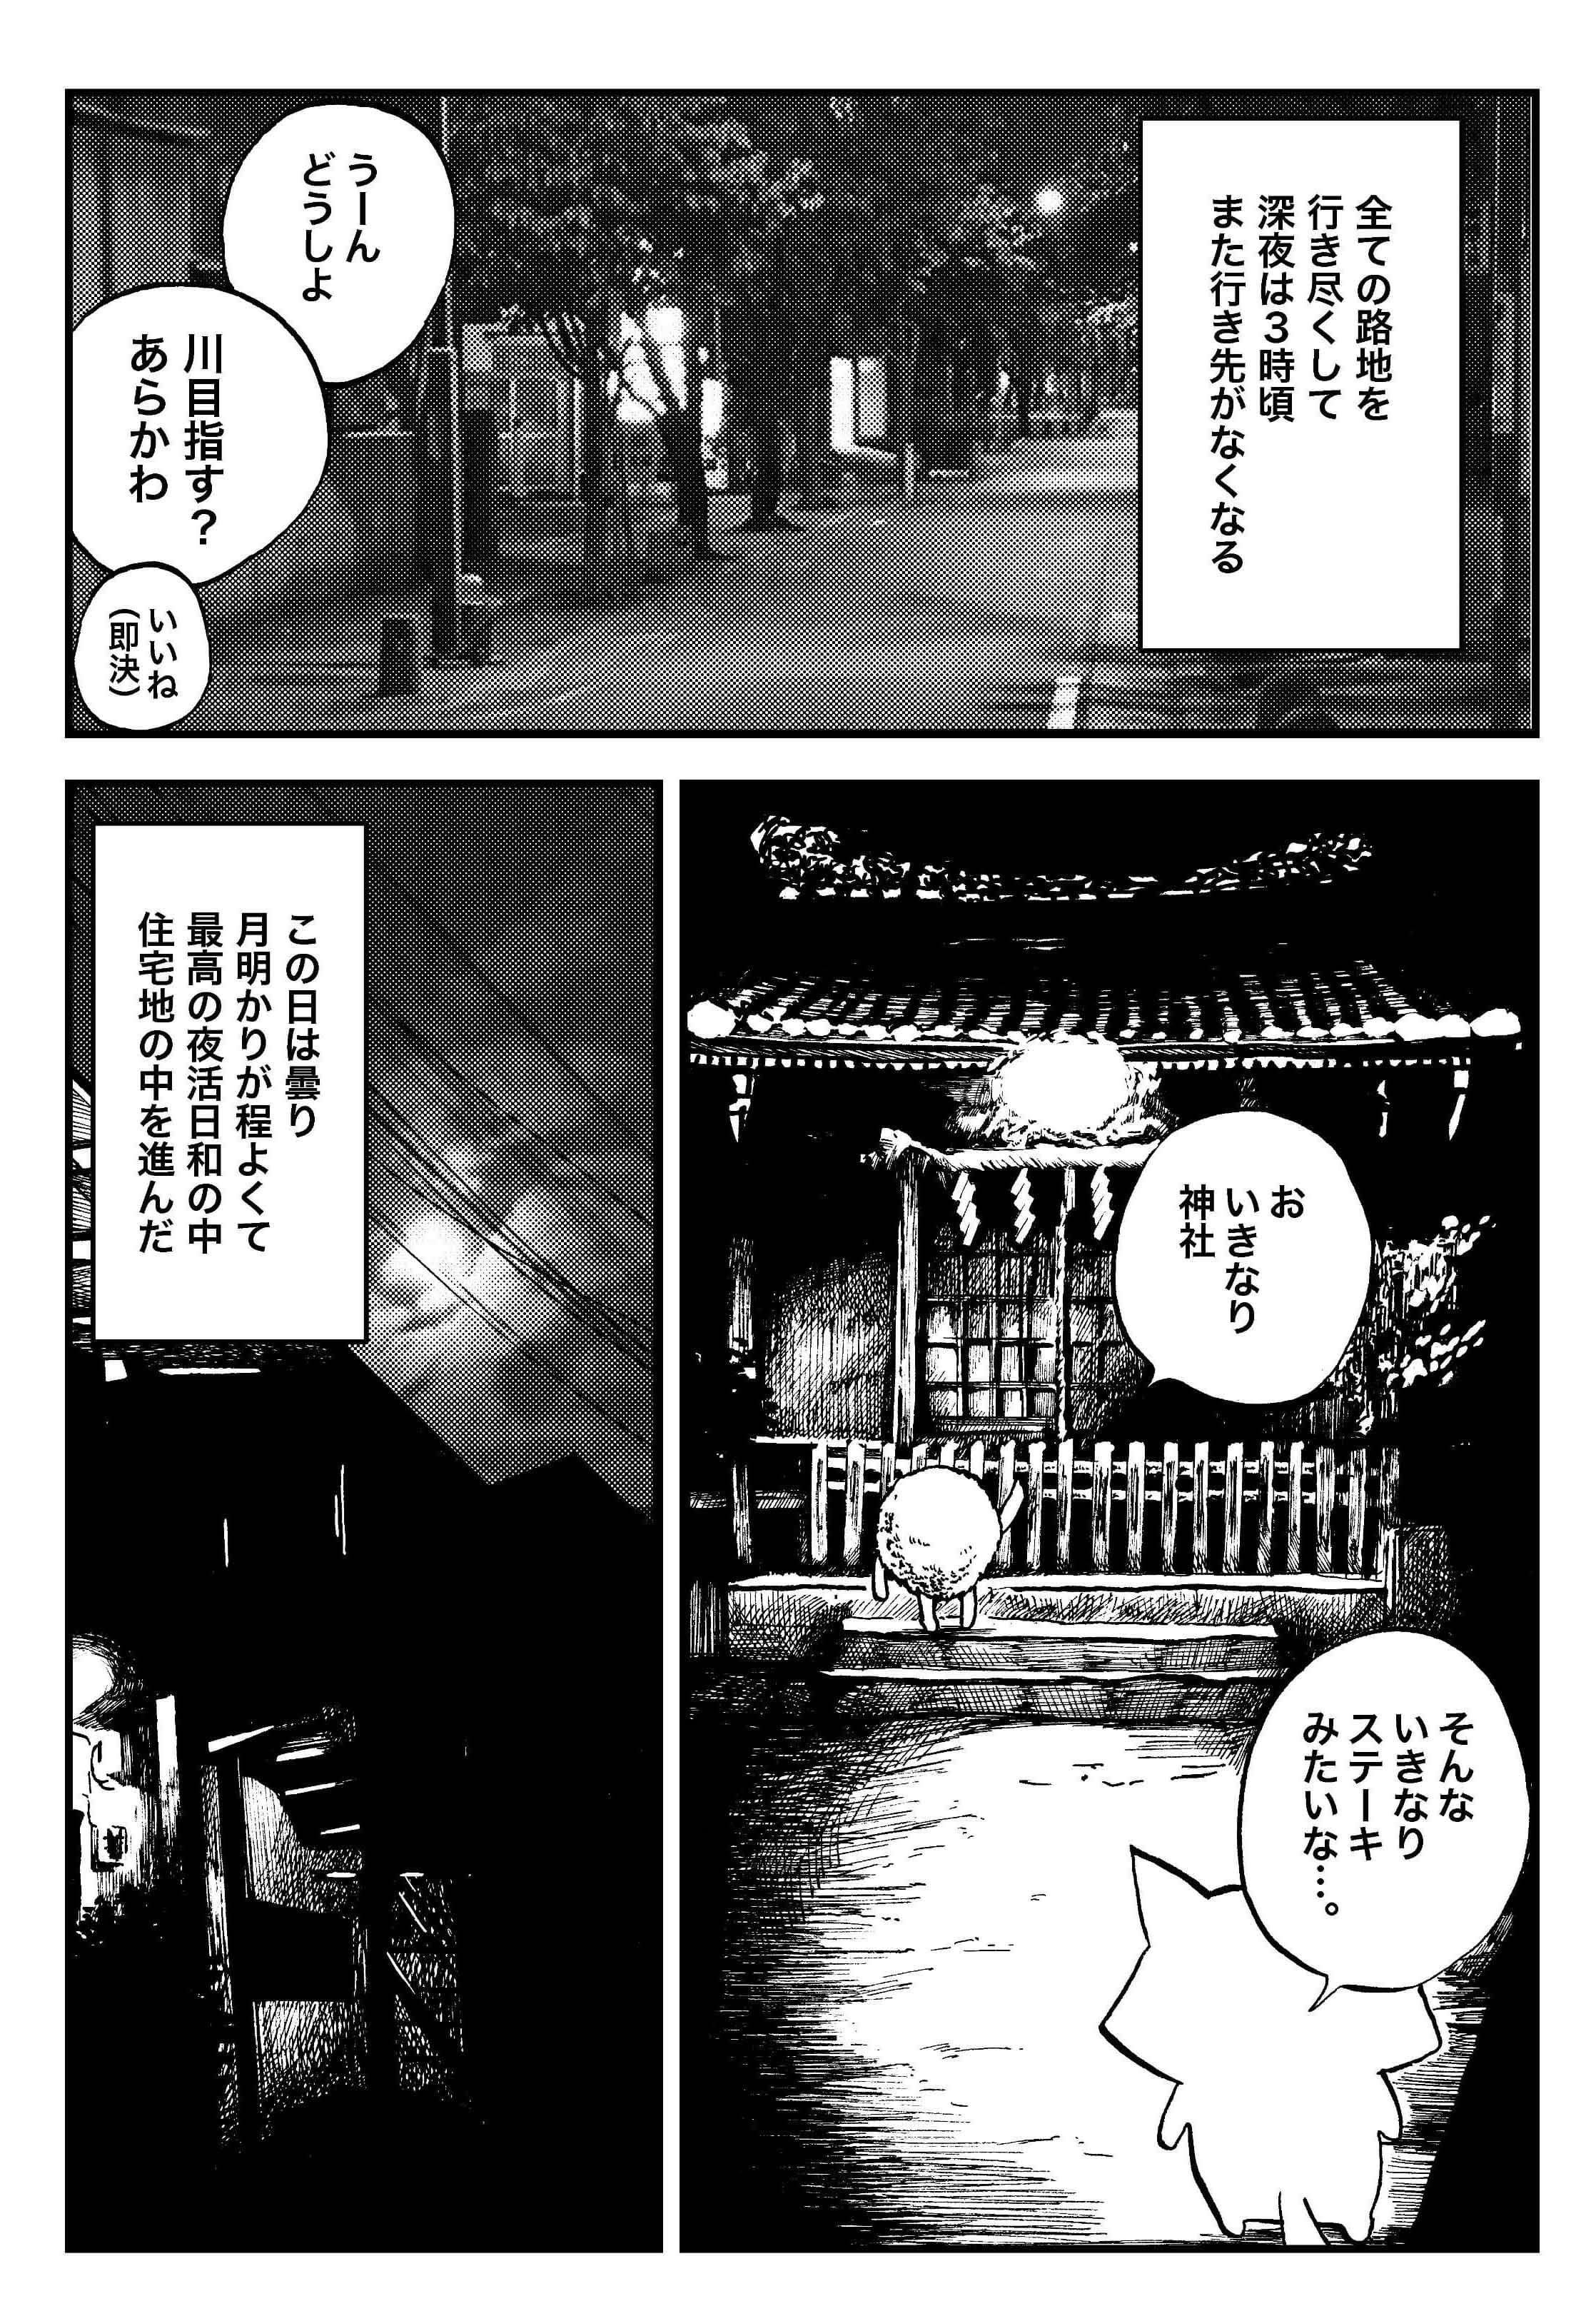 『夜活～夜の街を散歩した日記漫画～』／森凡 １０.jpg